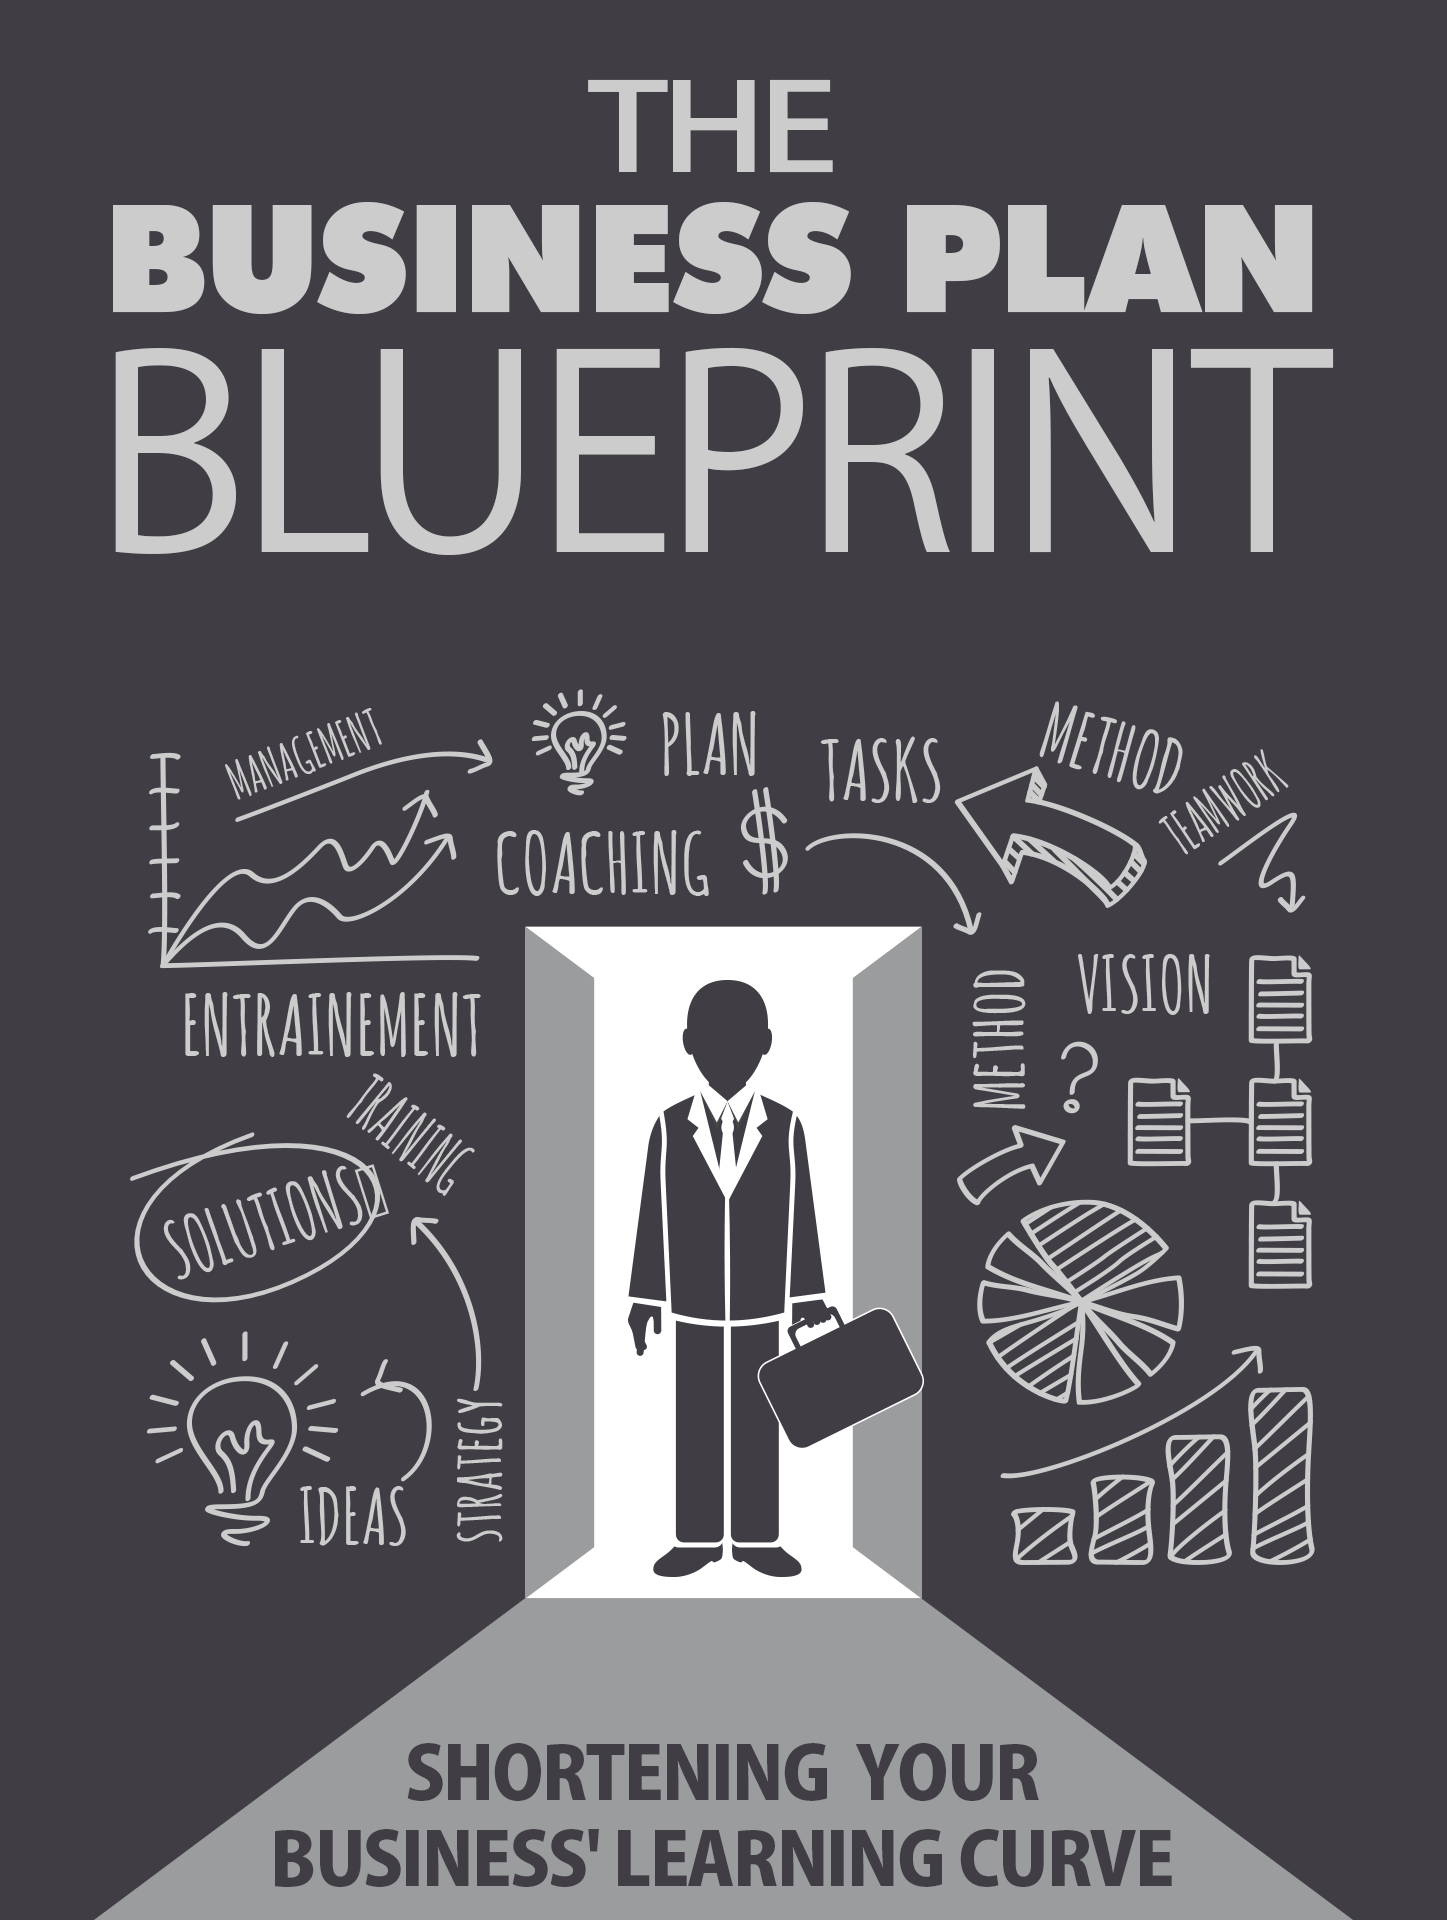 The Business Plan Blueprint – BIBLICAL DIGITAL INTERNET INFORMATION